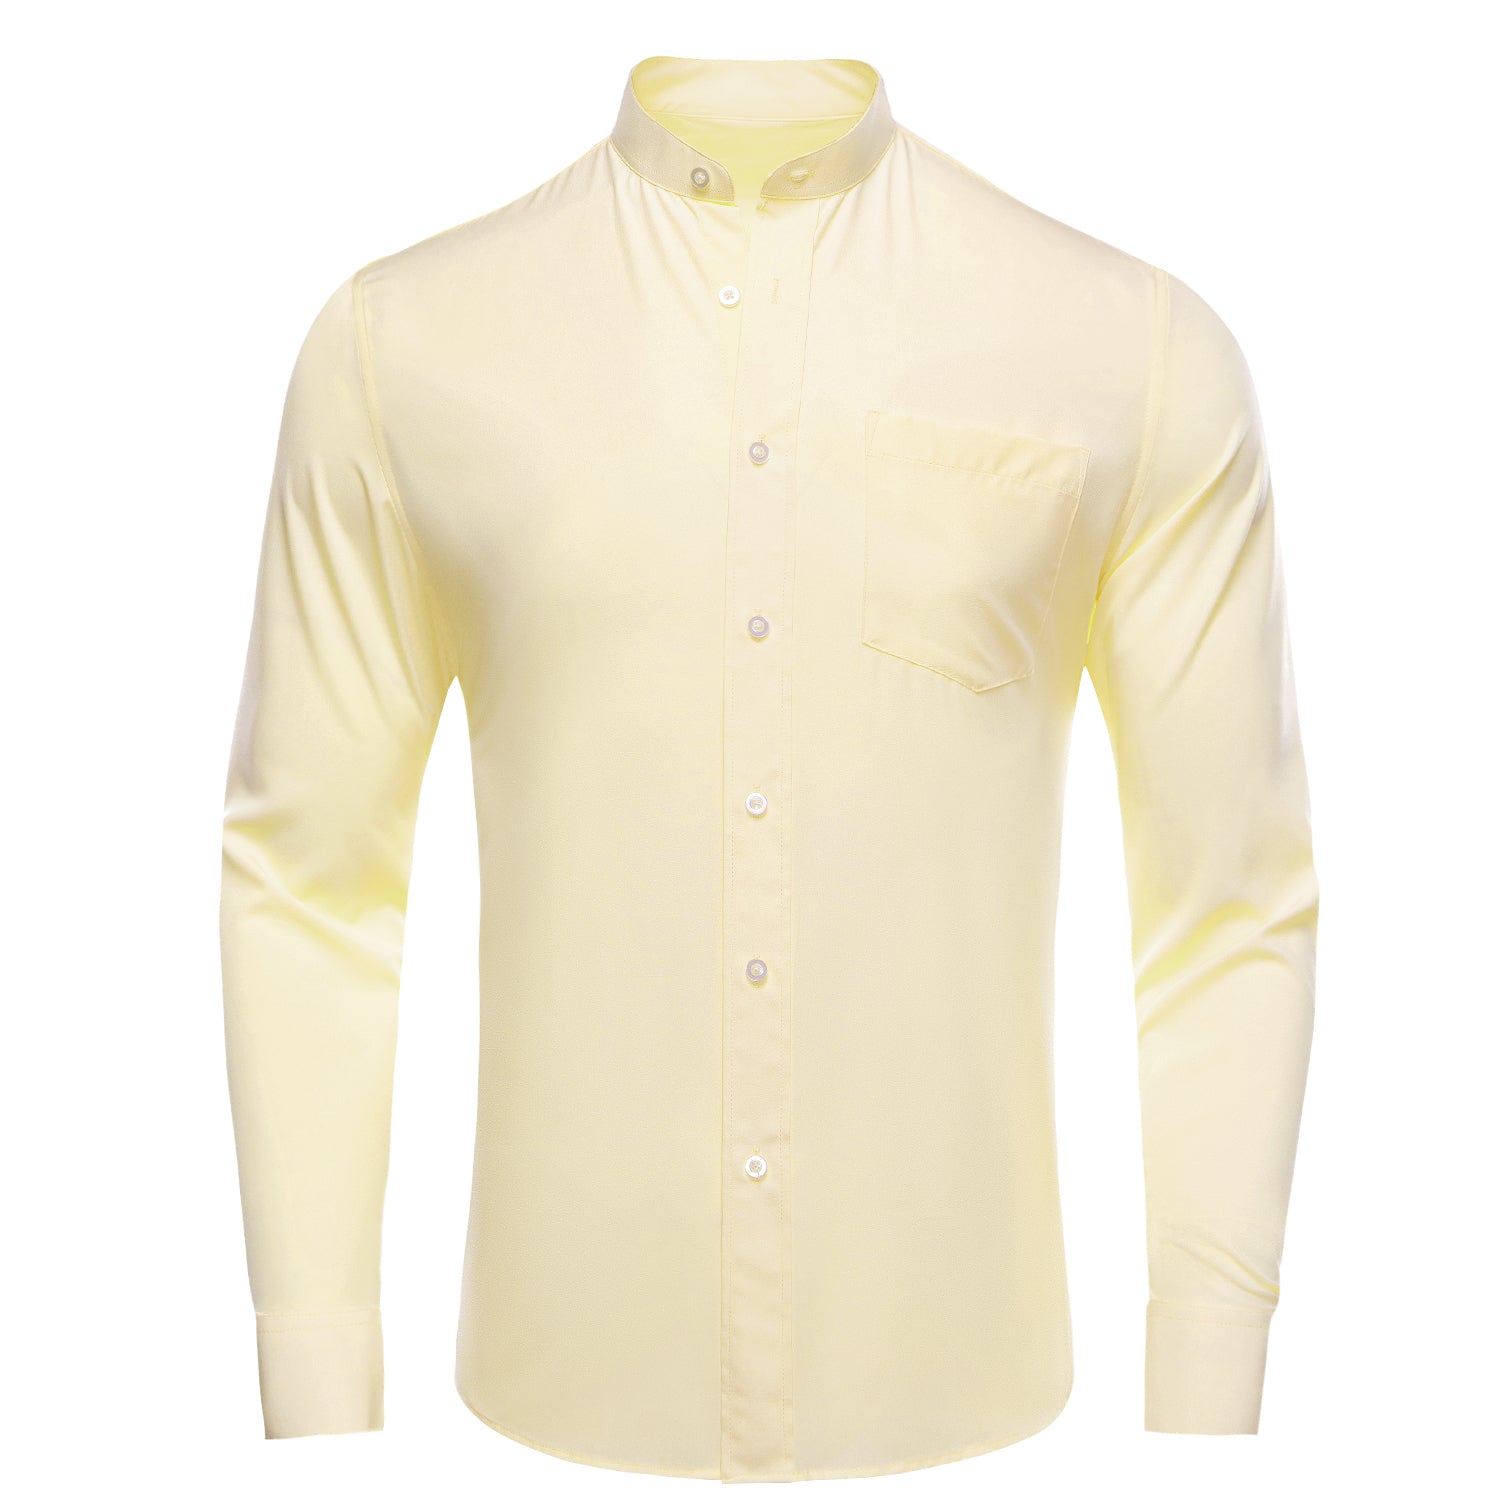 Light Yellow Solid Men's Long Sleeve Dress Shirt